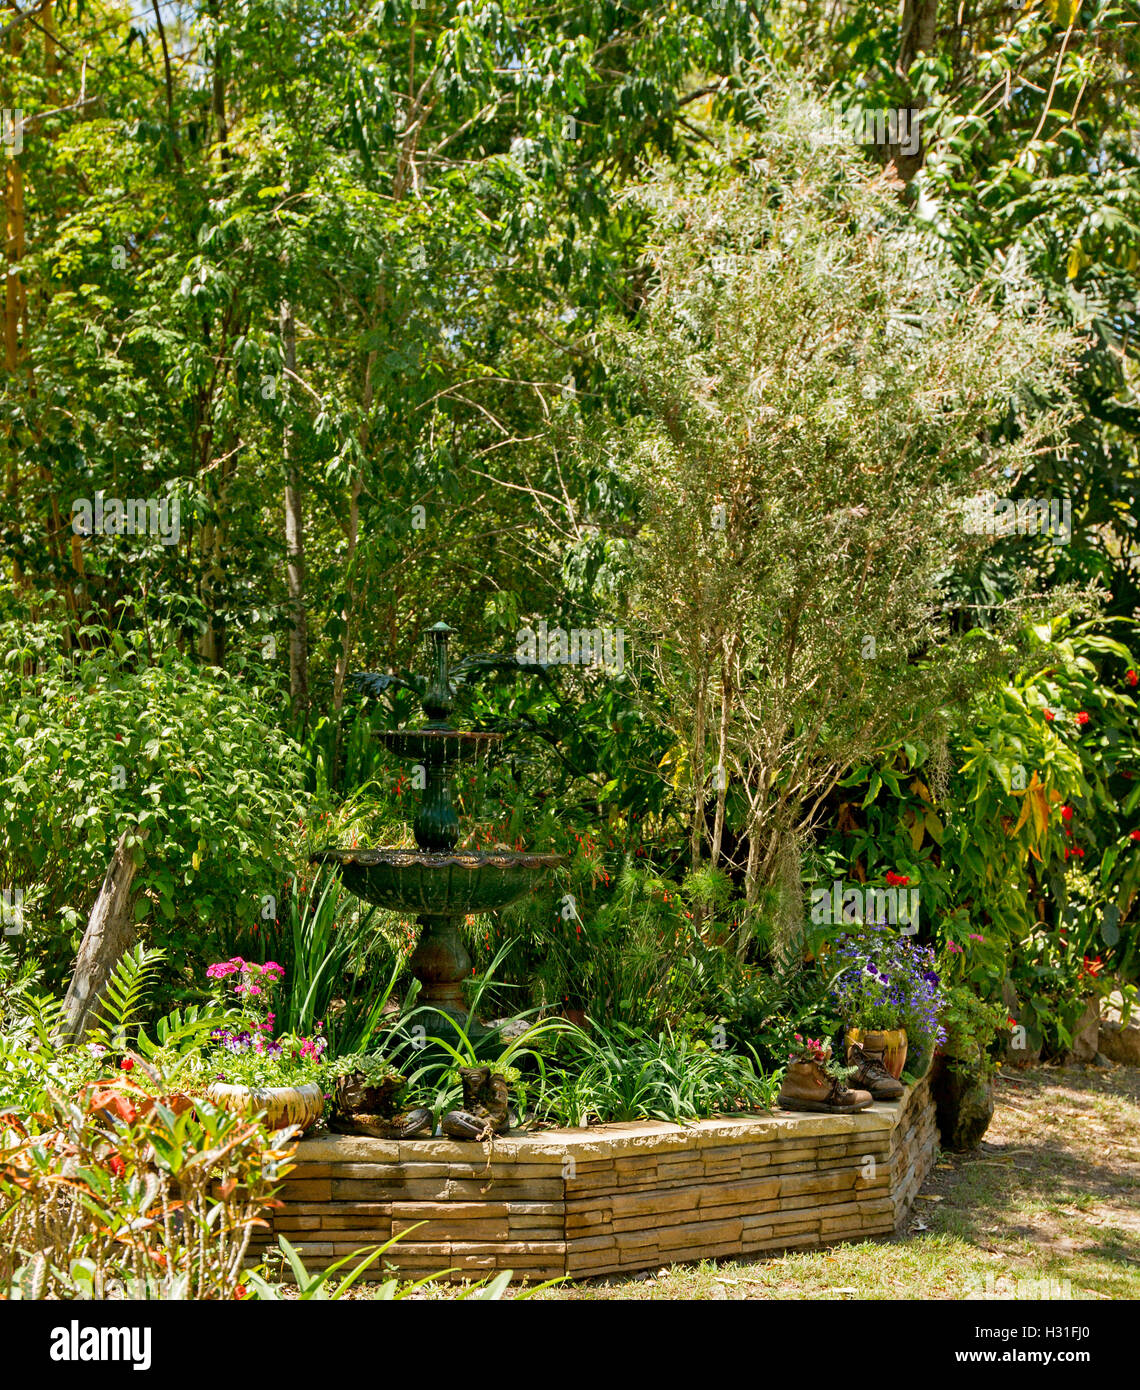 Jardin avec une fontaine décorative entouré de feuillage vert émeraude, faible paroi de rochers, arbres, fleurs colorées et de plantes annuelles Banque D'Images